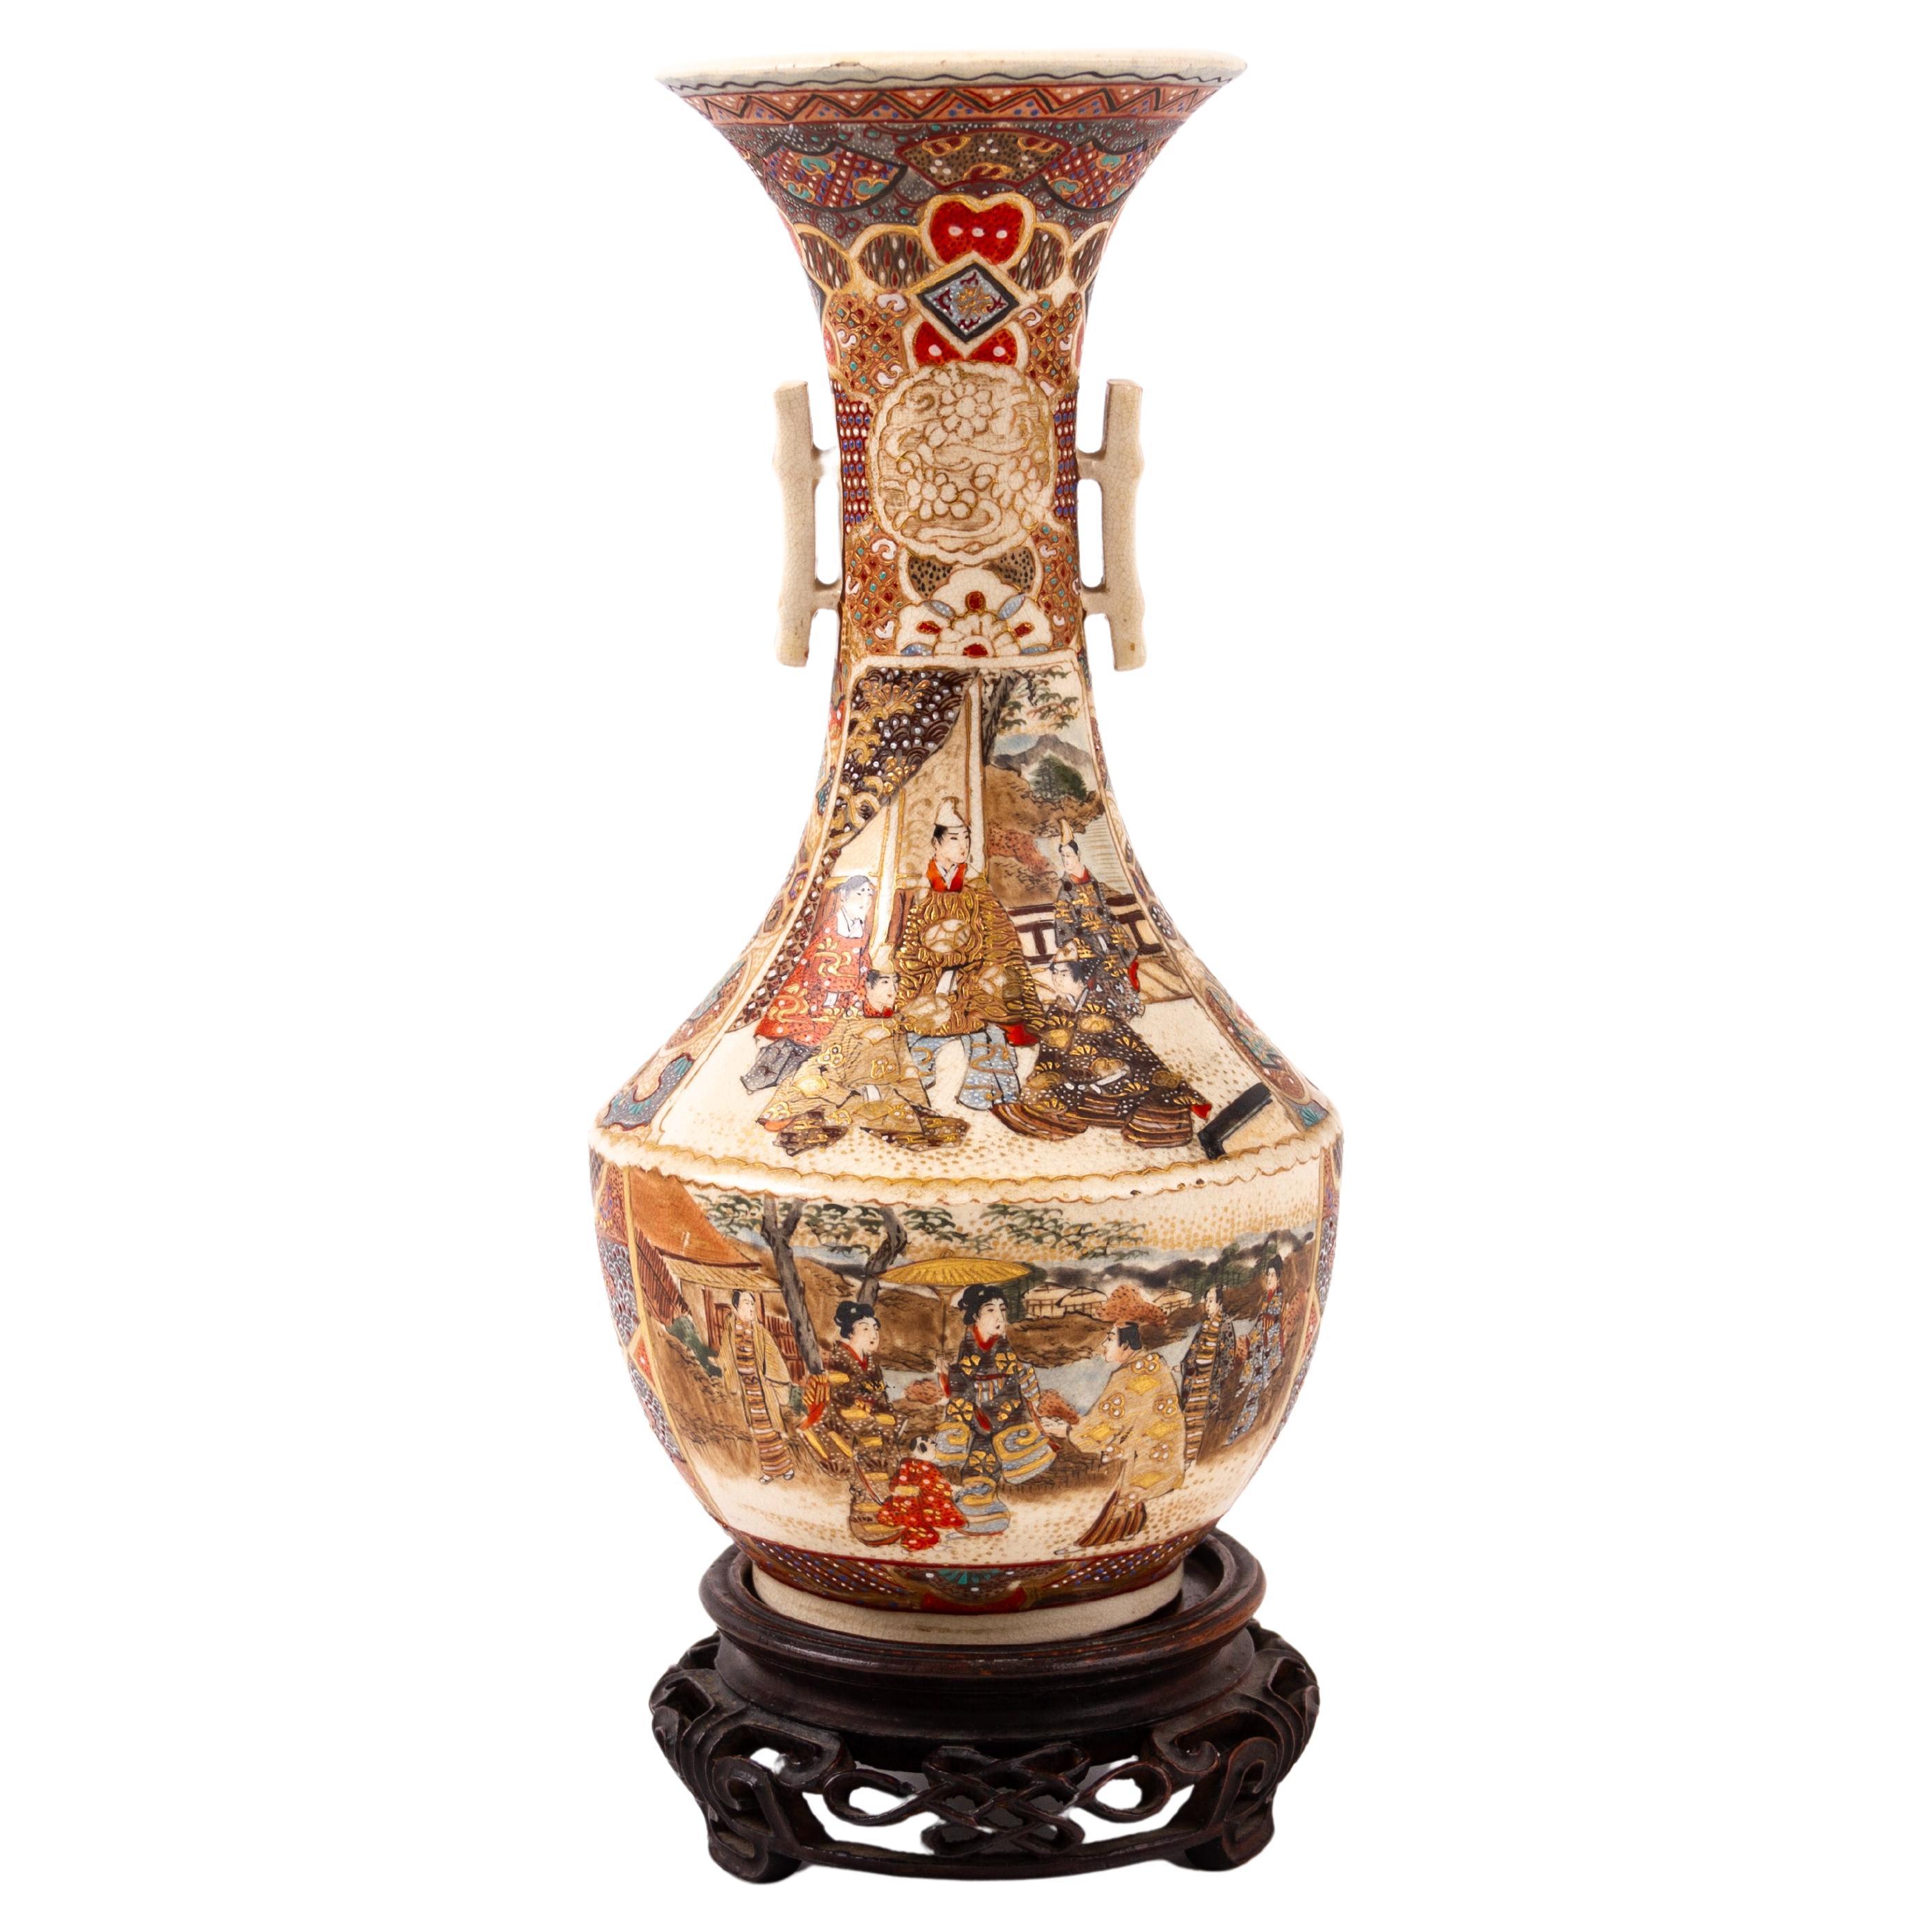 Japanese Satsuma Meiji Vase 19th Century 